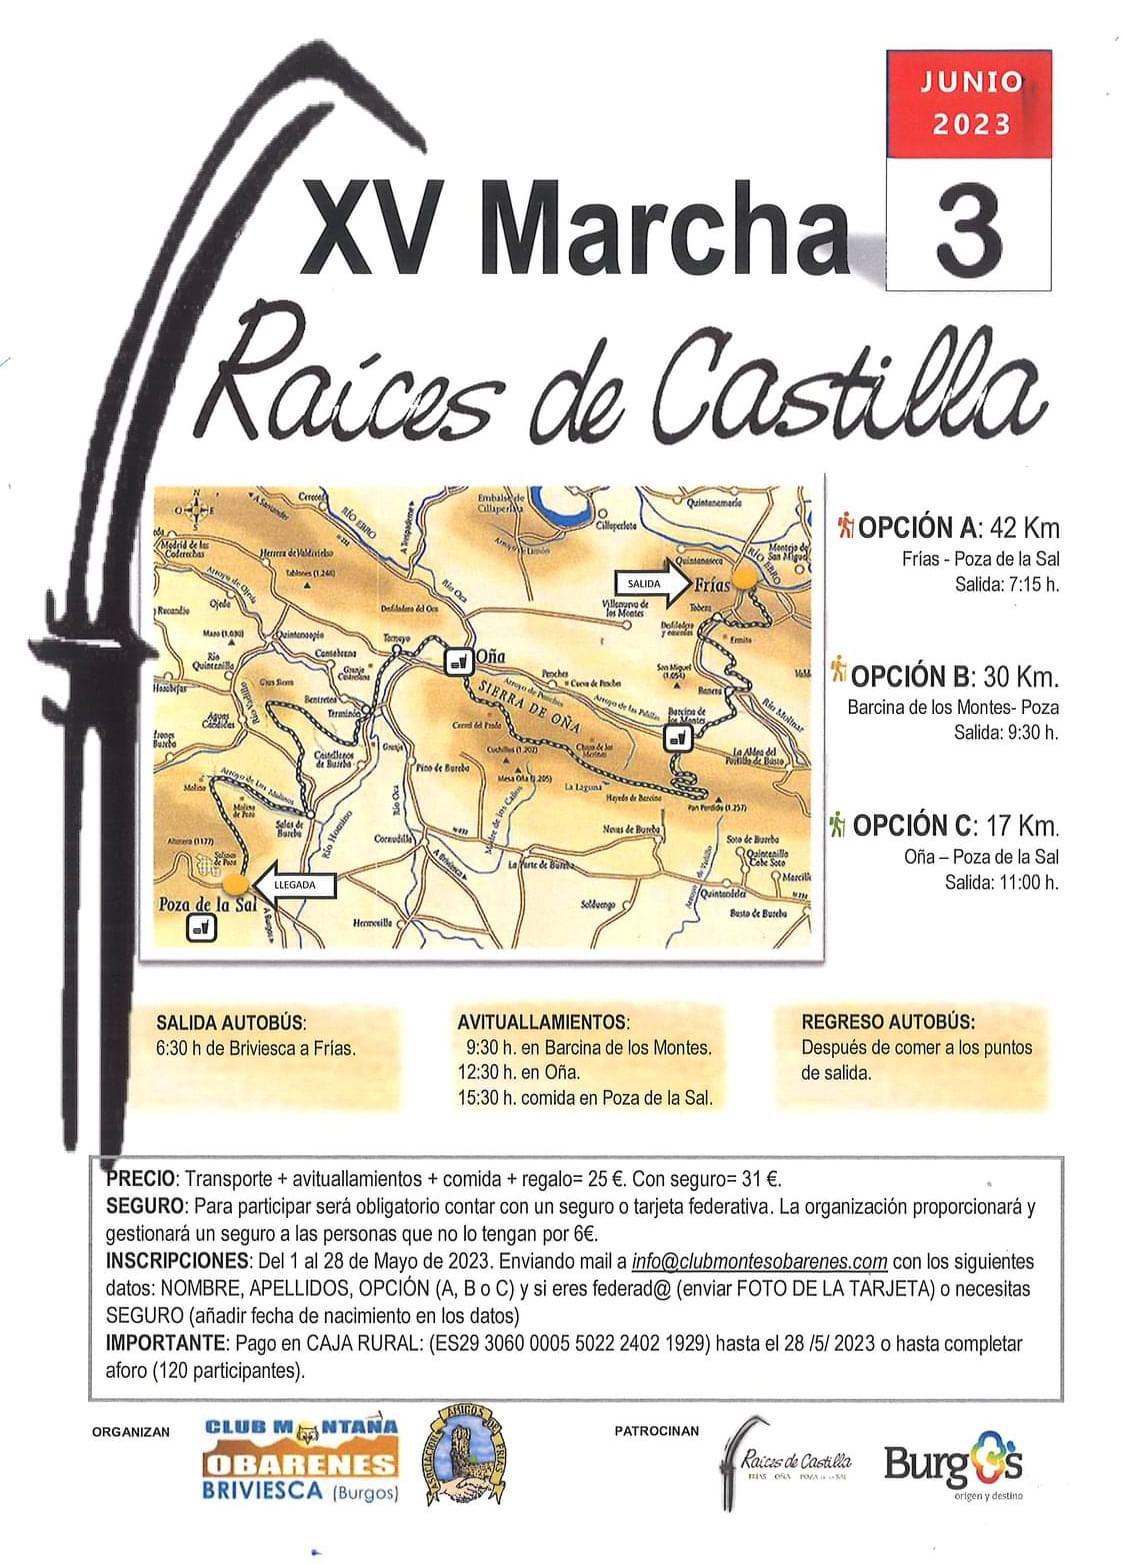 XV Marcha Raices de Castilla